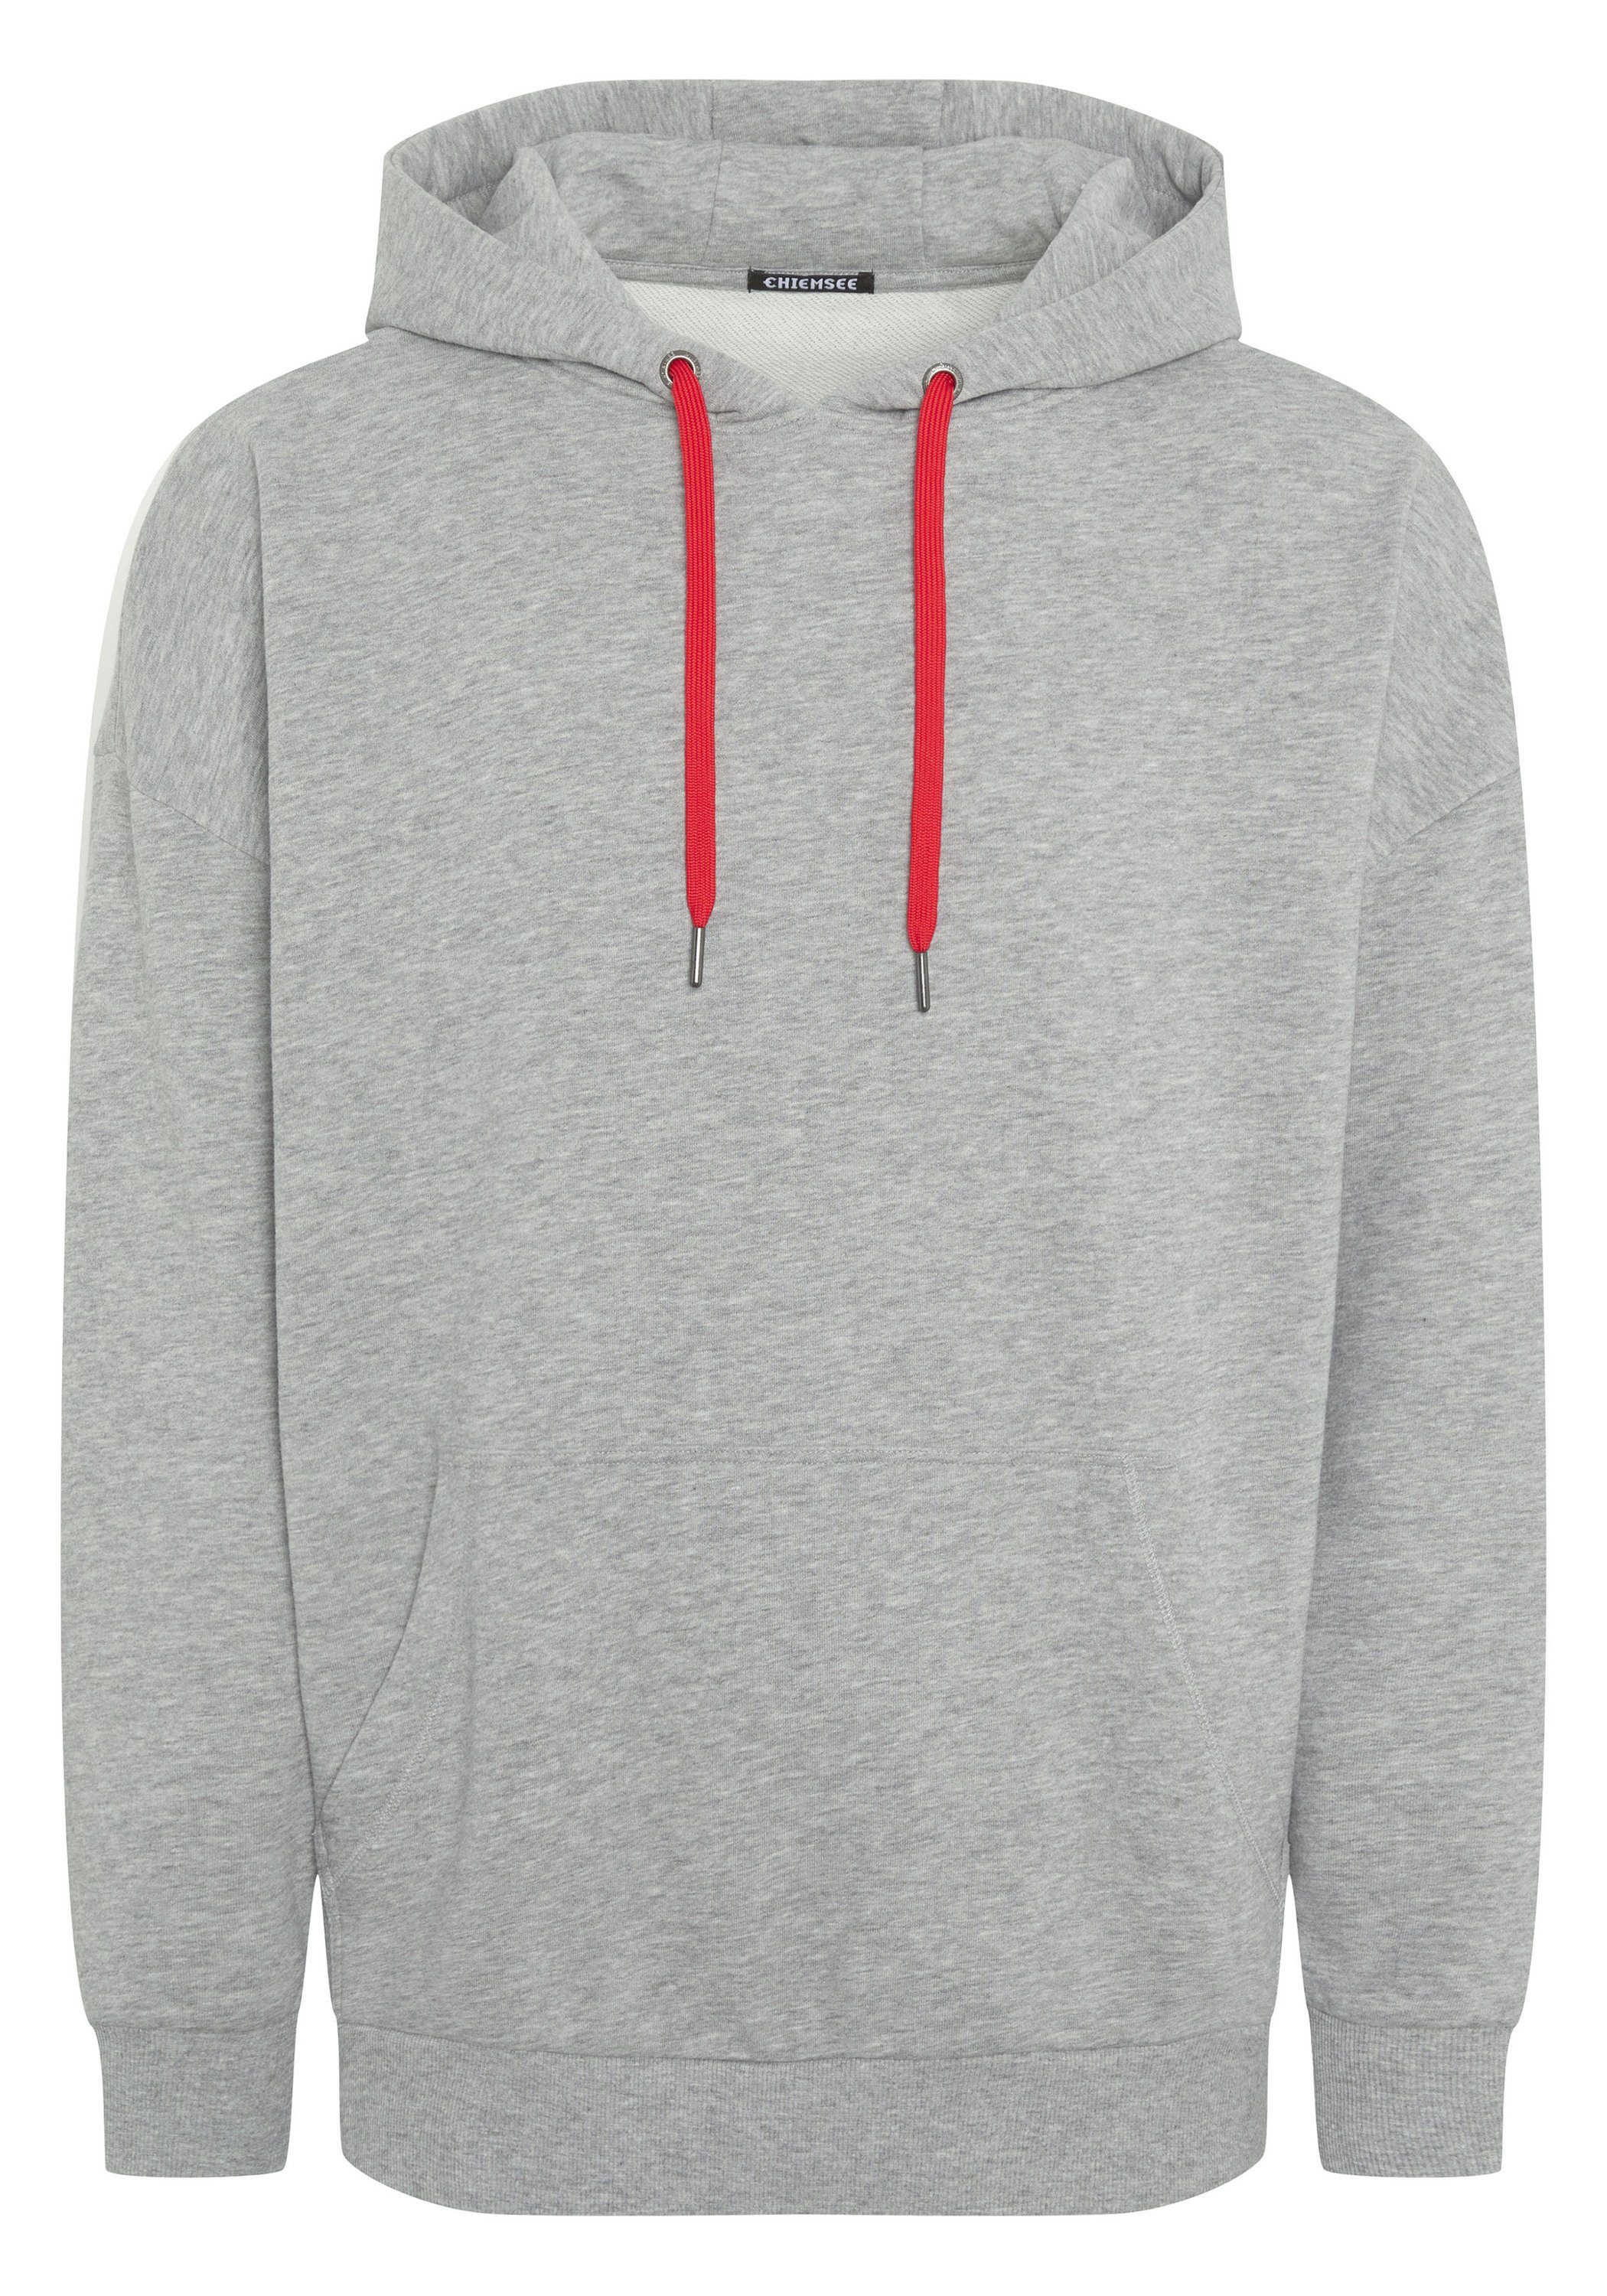 Chiemsee Kapuzensweatshirt Hoodie mit Print und Stitching 1 17-4402M Neutral Gray Melange